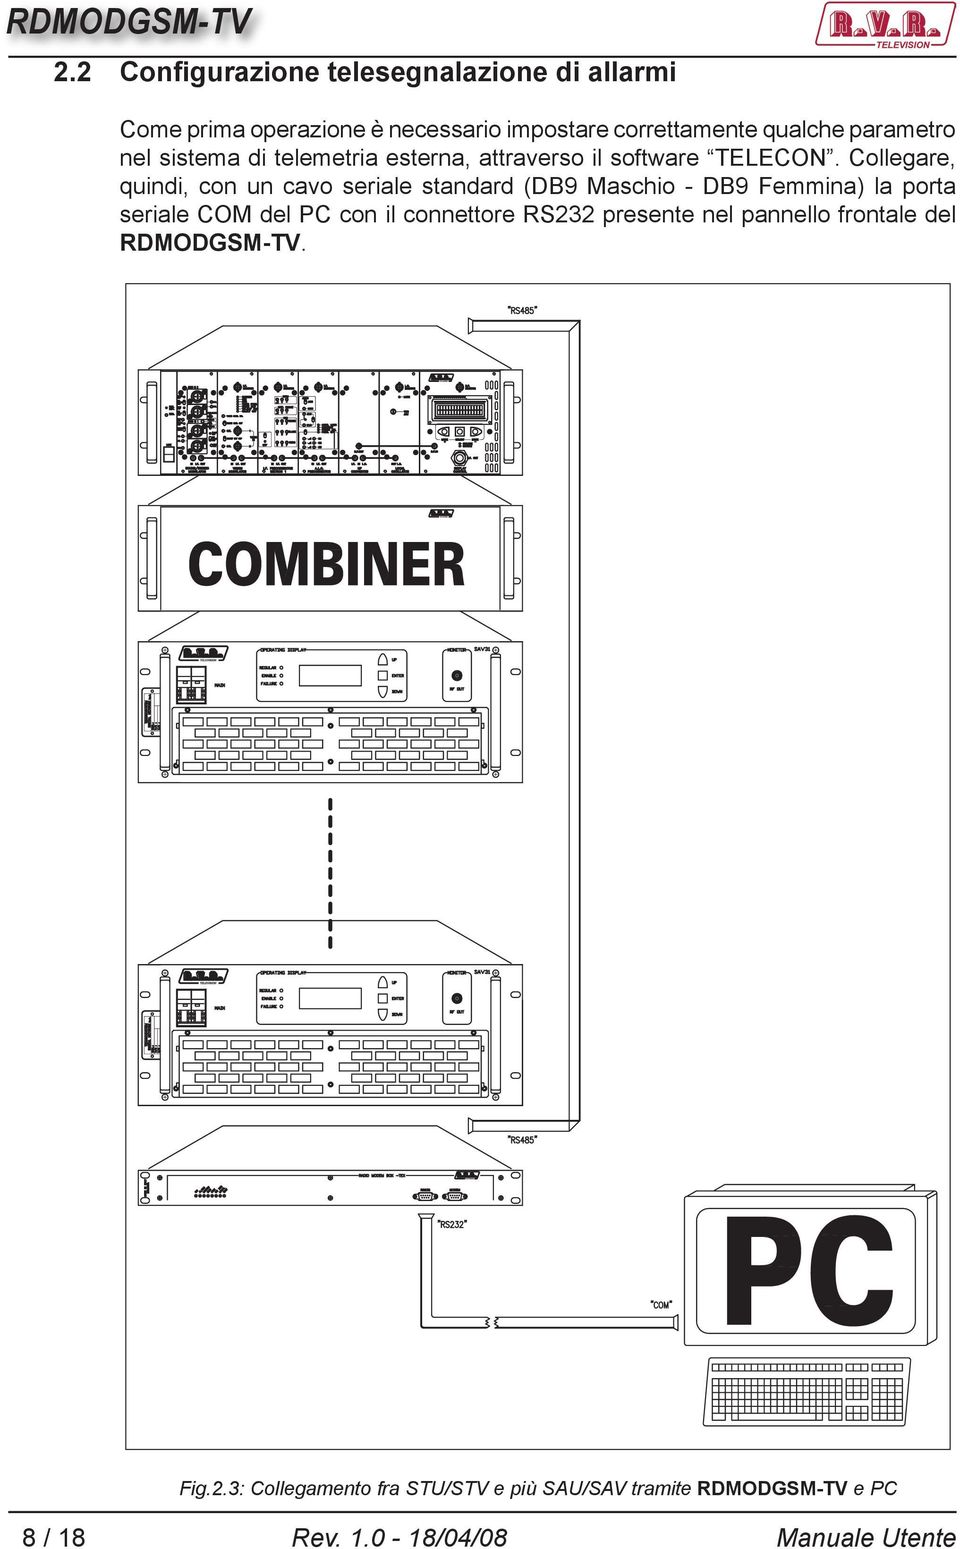 Collegare, quindi, con un cavo seriale standard (DB9 Maschio - DB9 Femmina) la porta seriale COM del PC con il